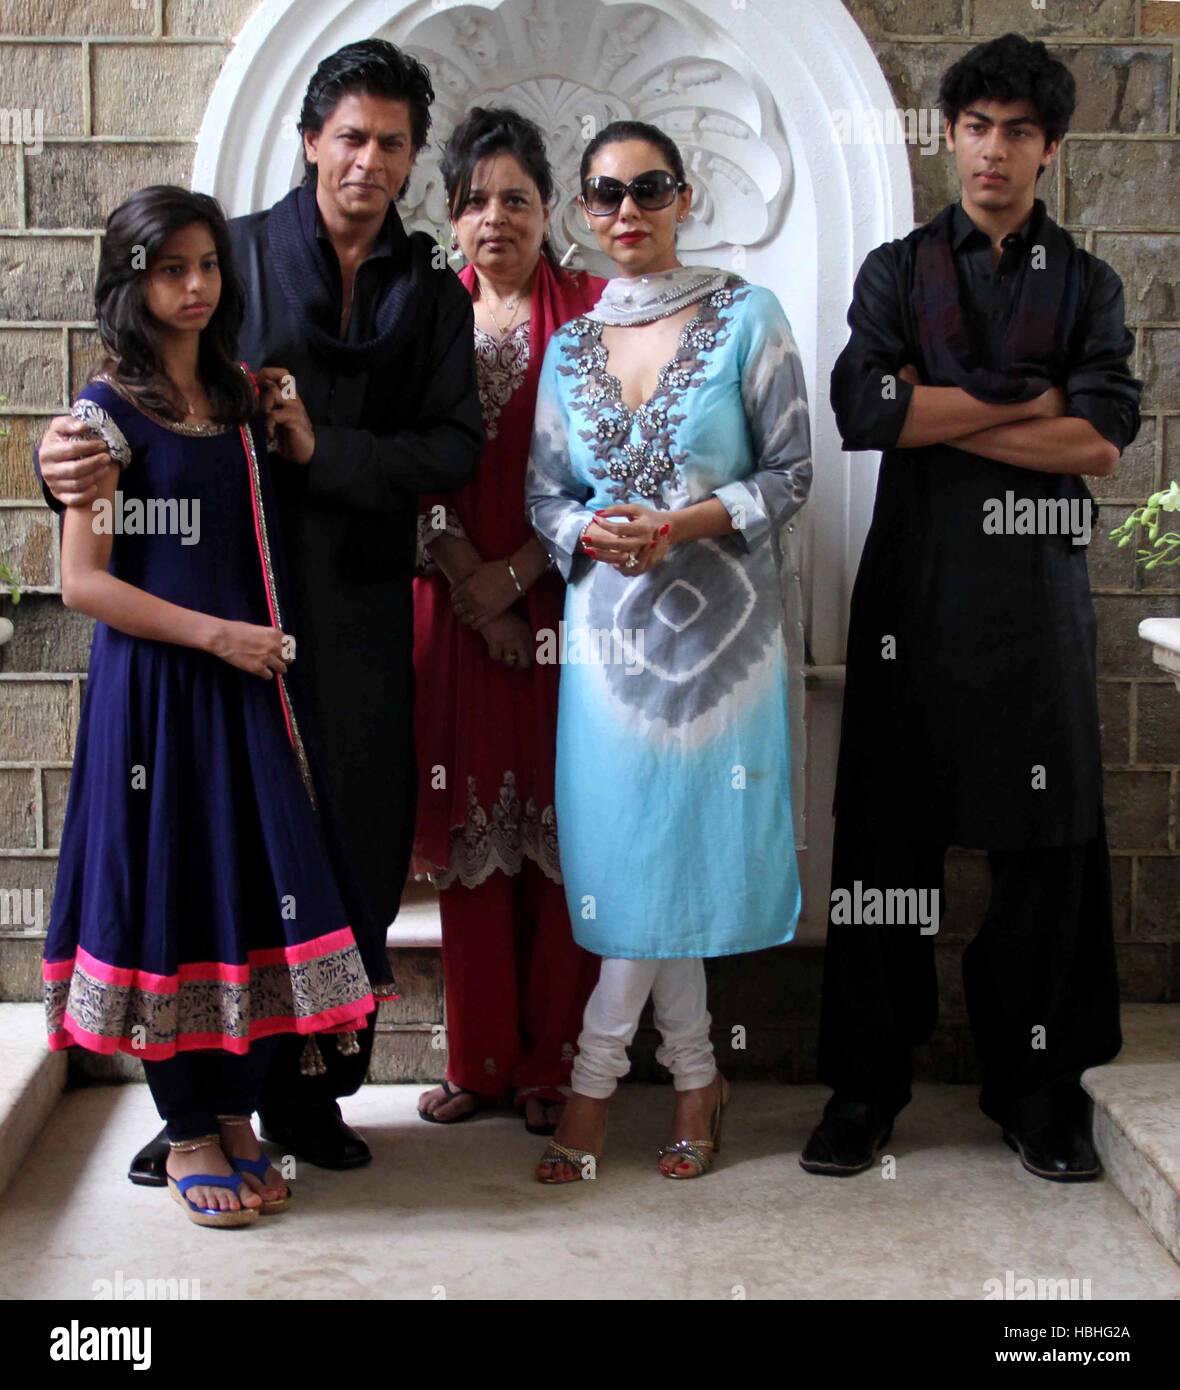 Family of Indian Bollywood actor Shah Rukh Khan with Suhana Khan, daughter, Shahnaz Lalarukh, sister, Gauri Khan, wife and son Aryan Khan, at his house Mannat, Bandra, Mumbai, India Stock Photo